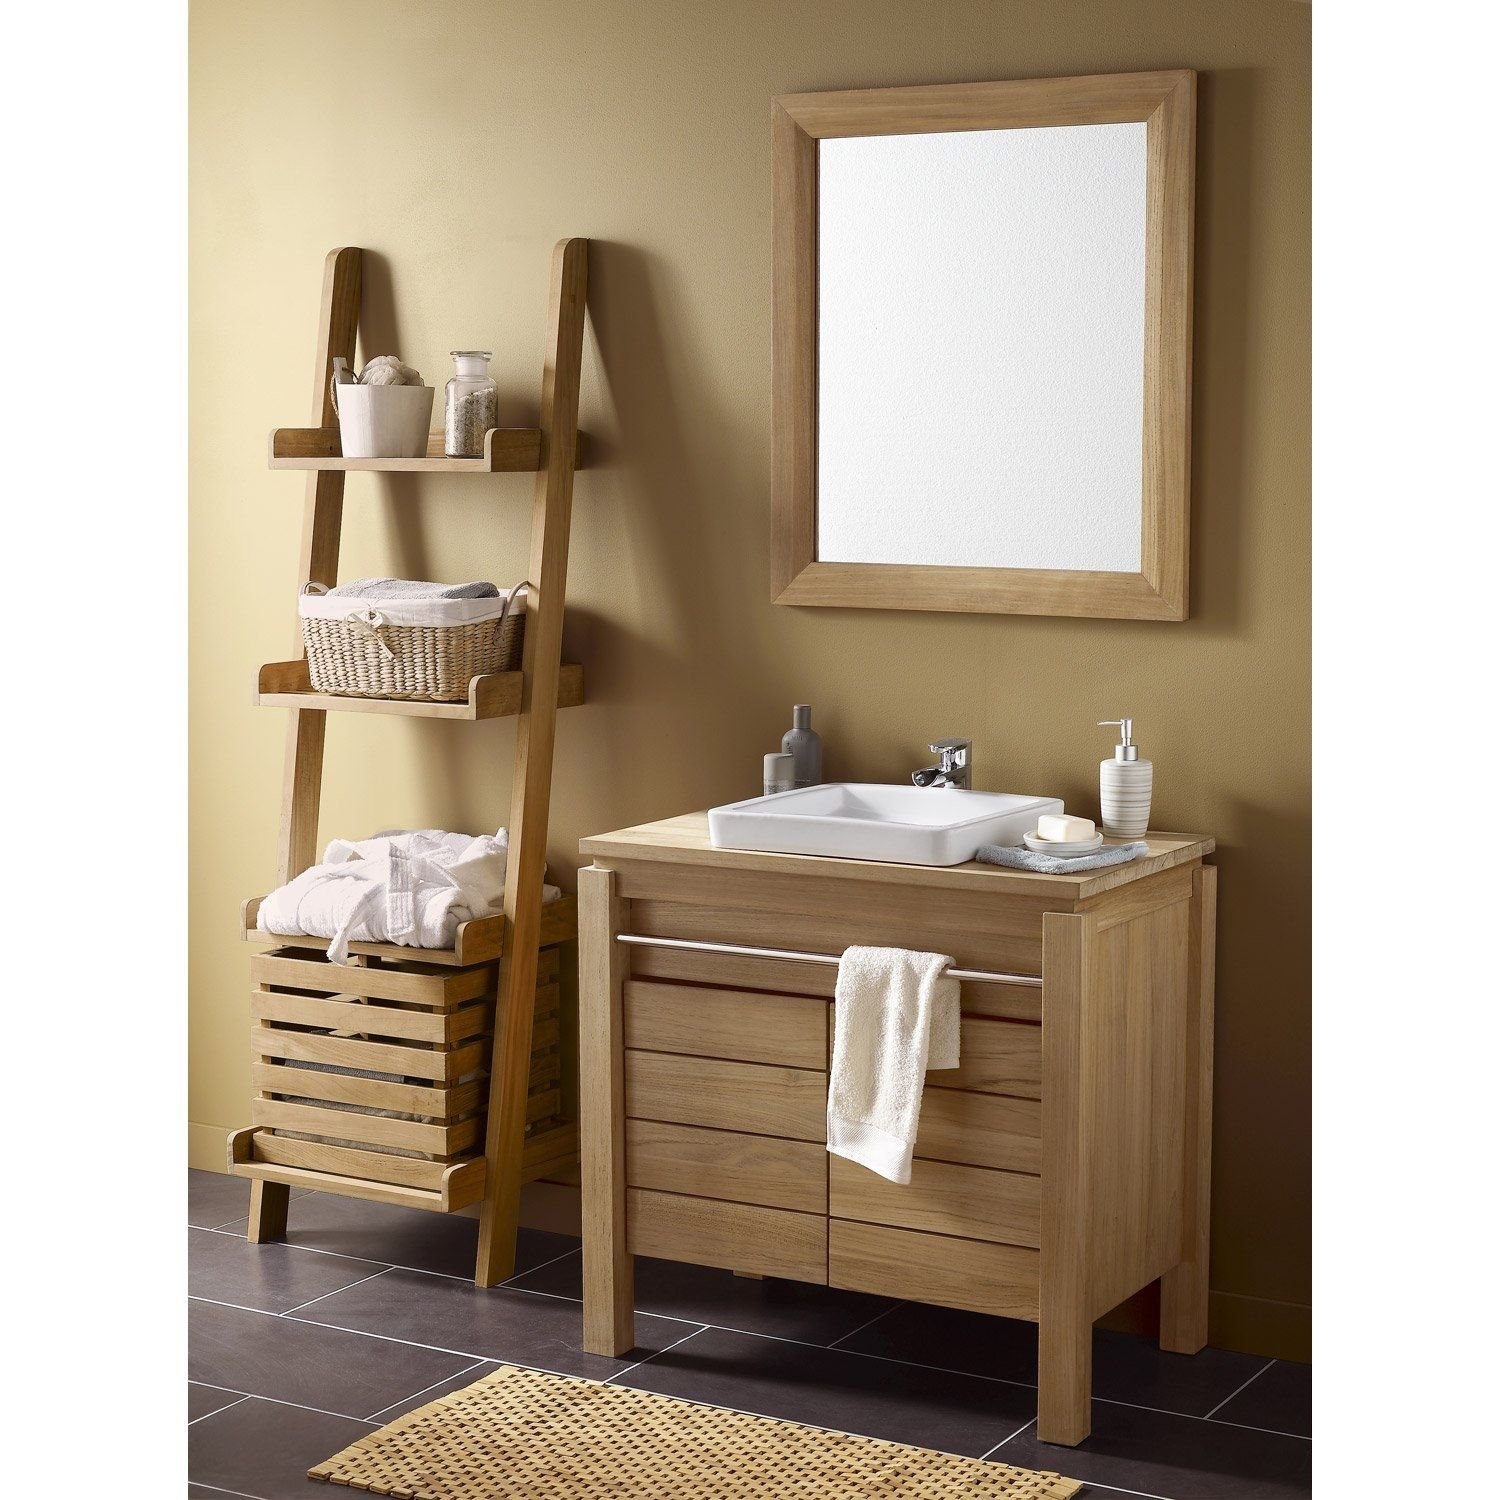 Мерлен мебель для ванной комнаты. Мебель для ванной ретро Леруа Мерлен. Мебель в ванную комнату. Деревянная мебель для ванной. Шкафчик в ванную из дерева.